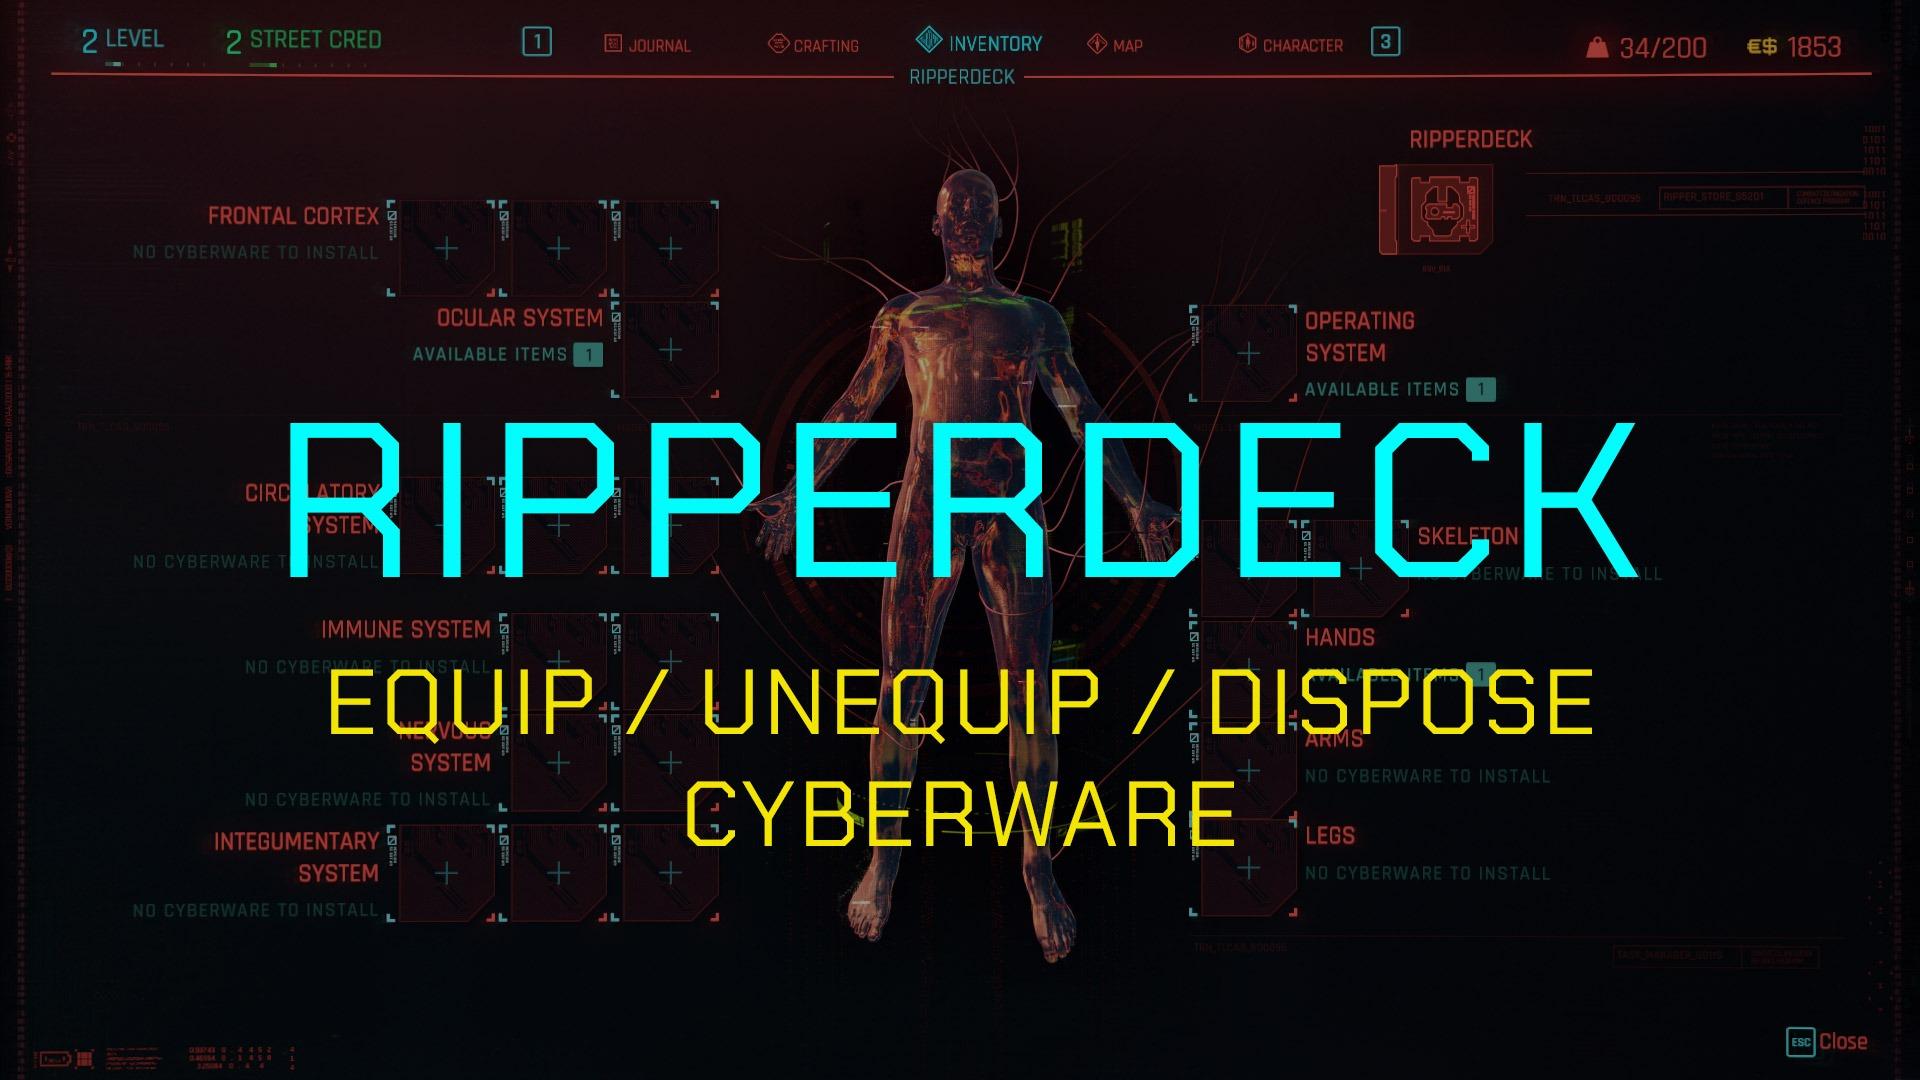 Cyber engine tweaks 2.12. Ripperdeck Cyberpunk. Ripperdeck.